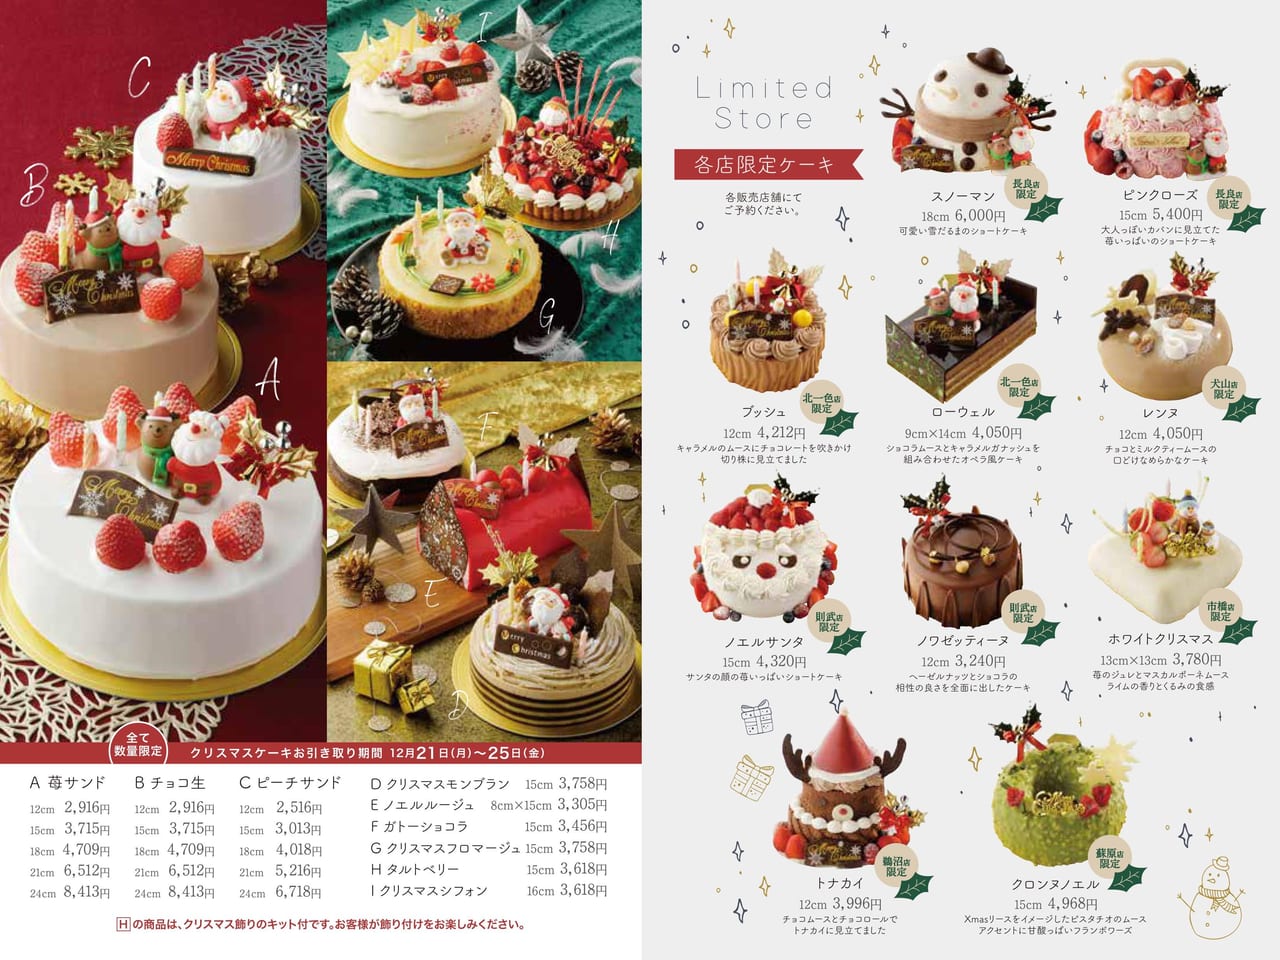 岐阜市 各店限定クリスマスケーキが人気です スリジェのクリスマスケーキの予約が始まっています 号外net 岐阜 美濃地方